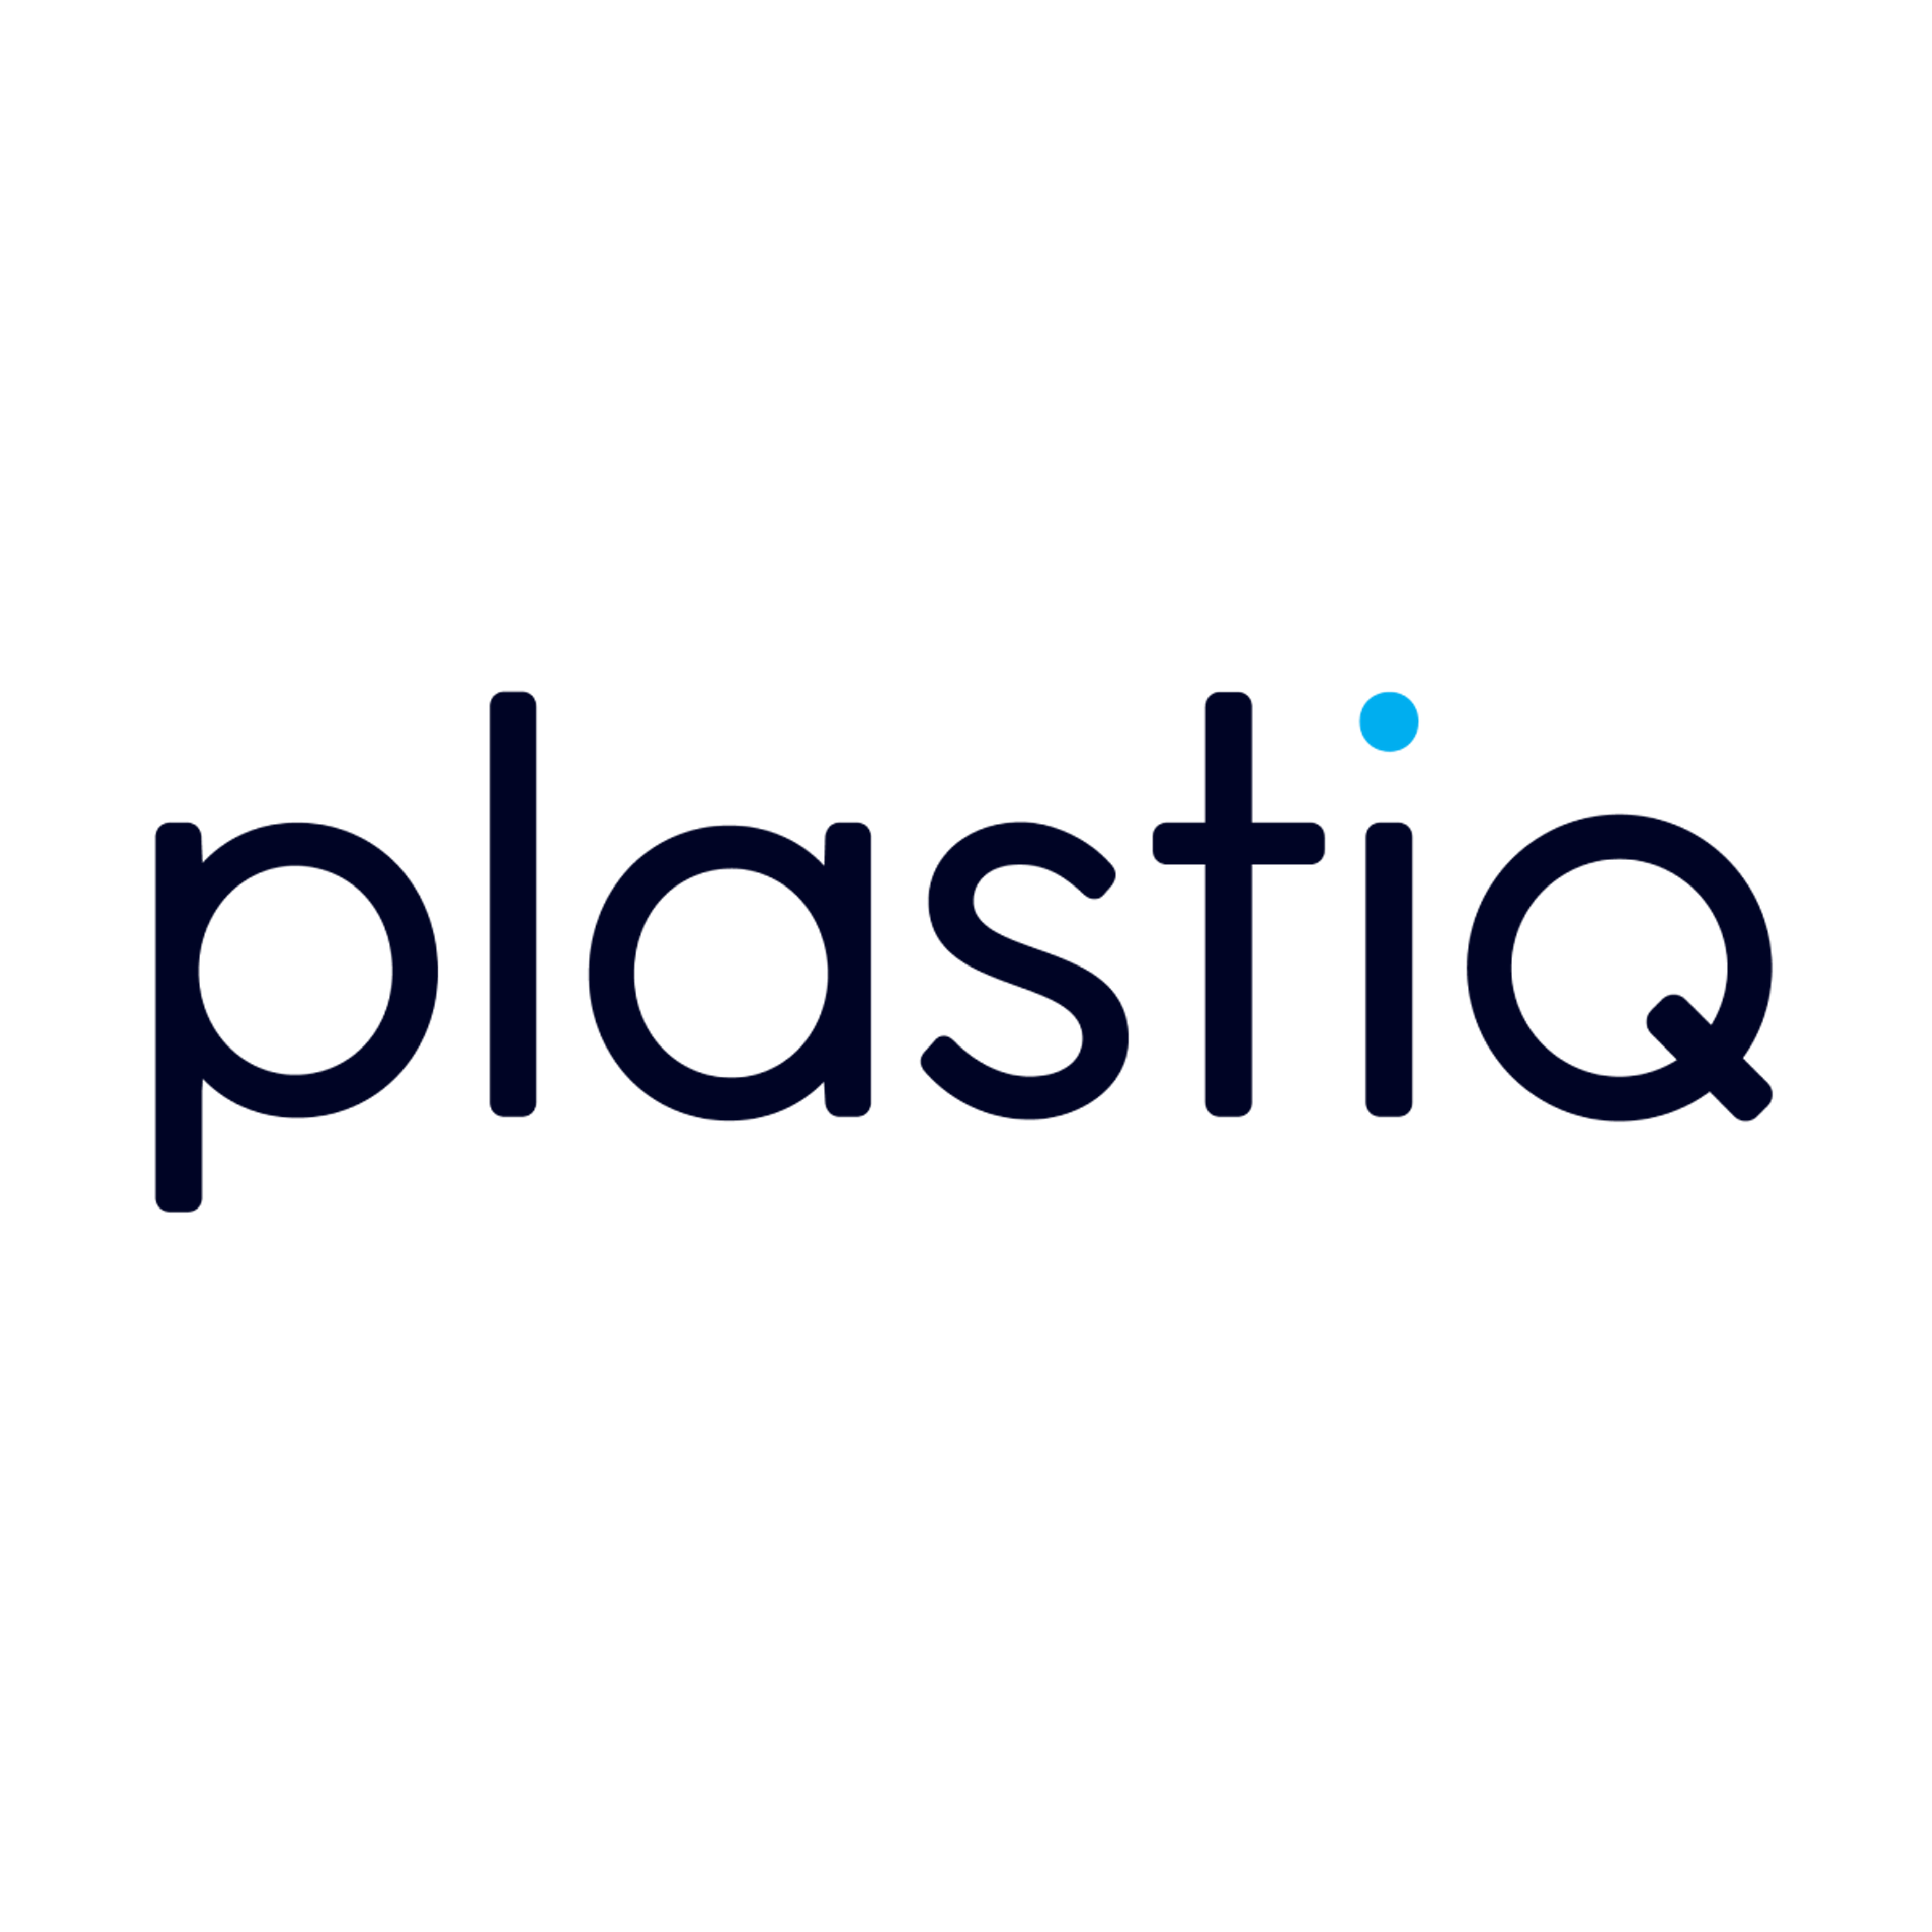 Plastiq Logo